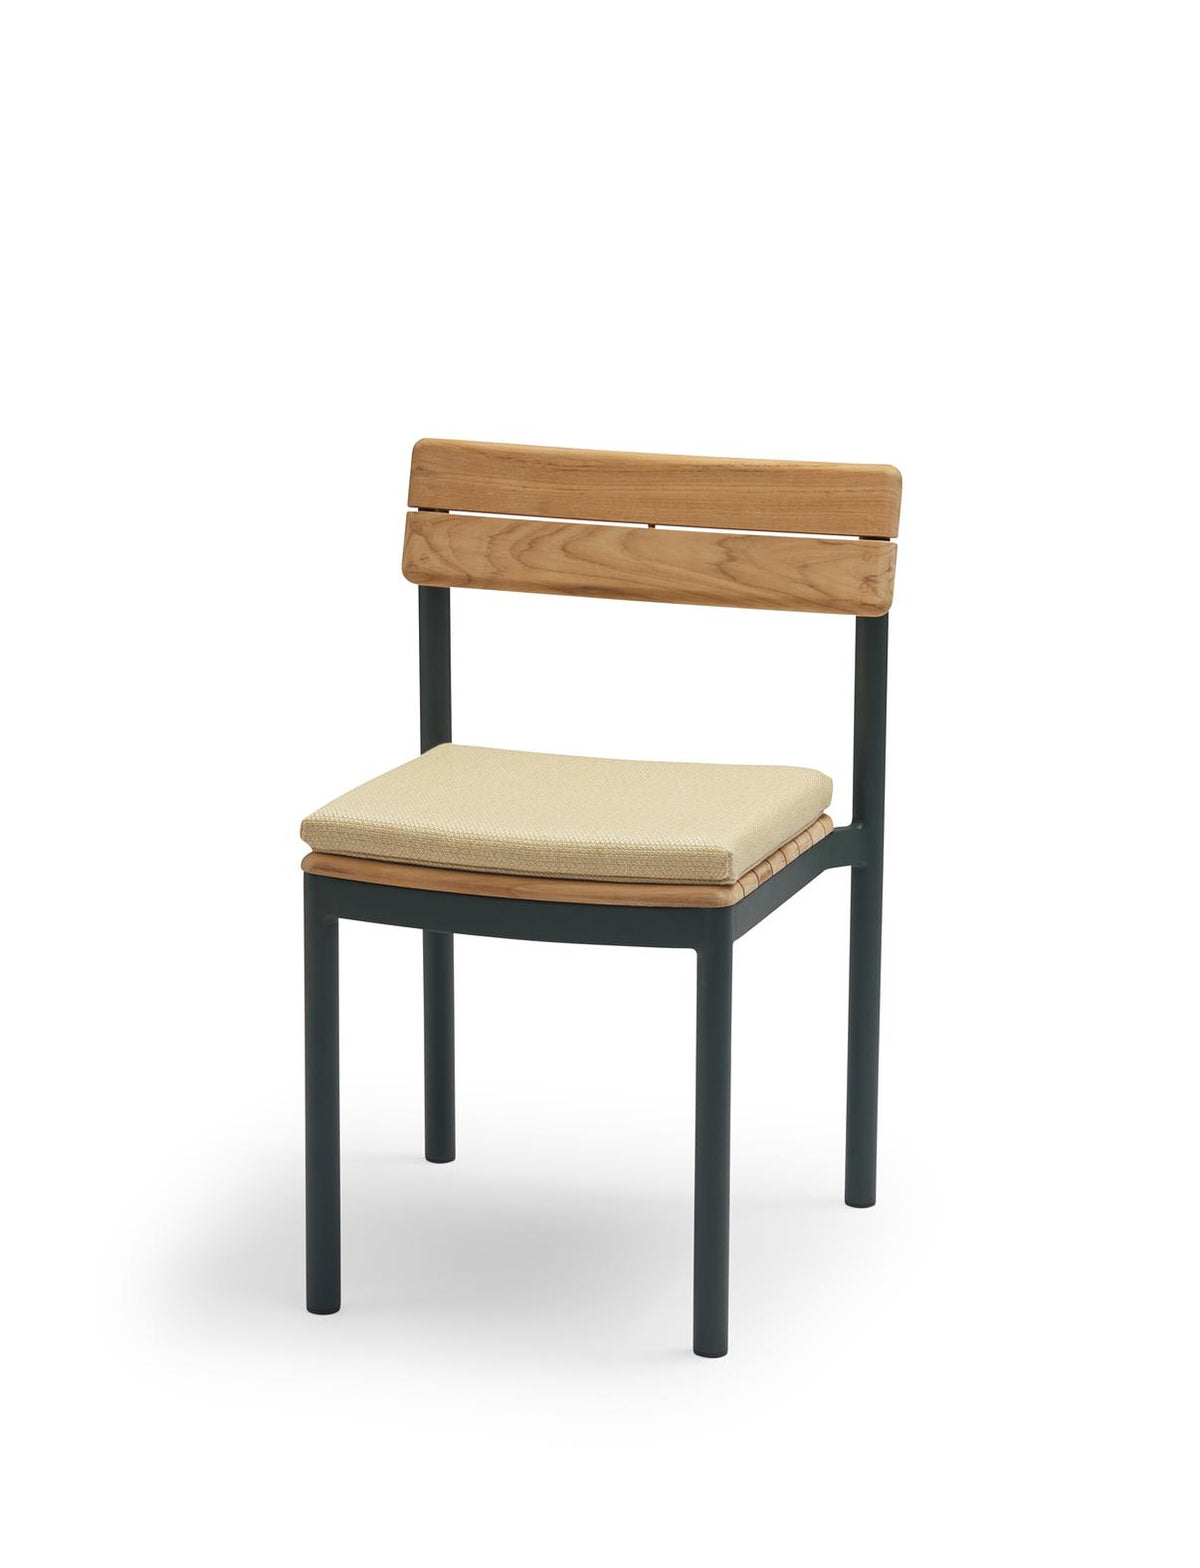 Pelagus Chair Cushion by Skagerak by Fritz Hansen